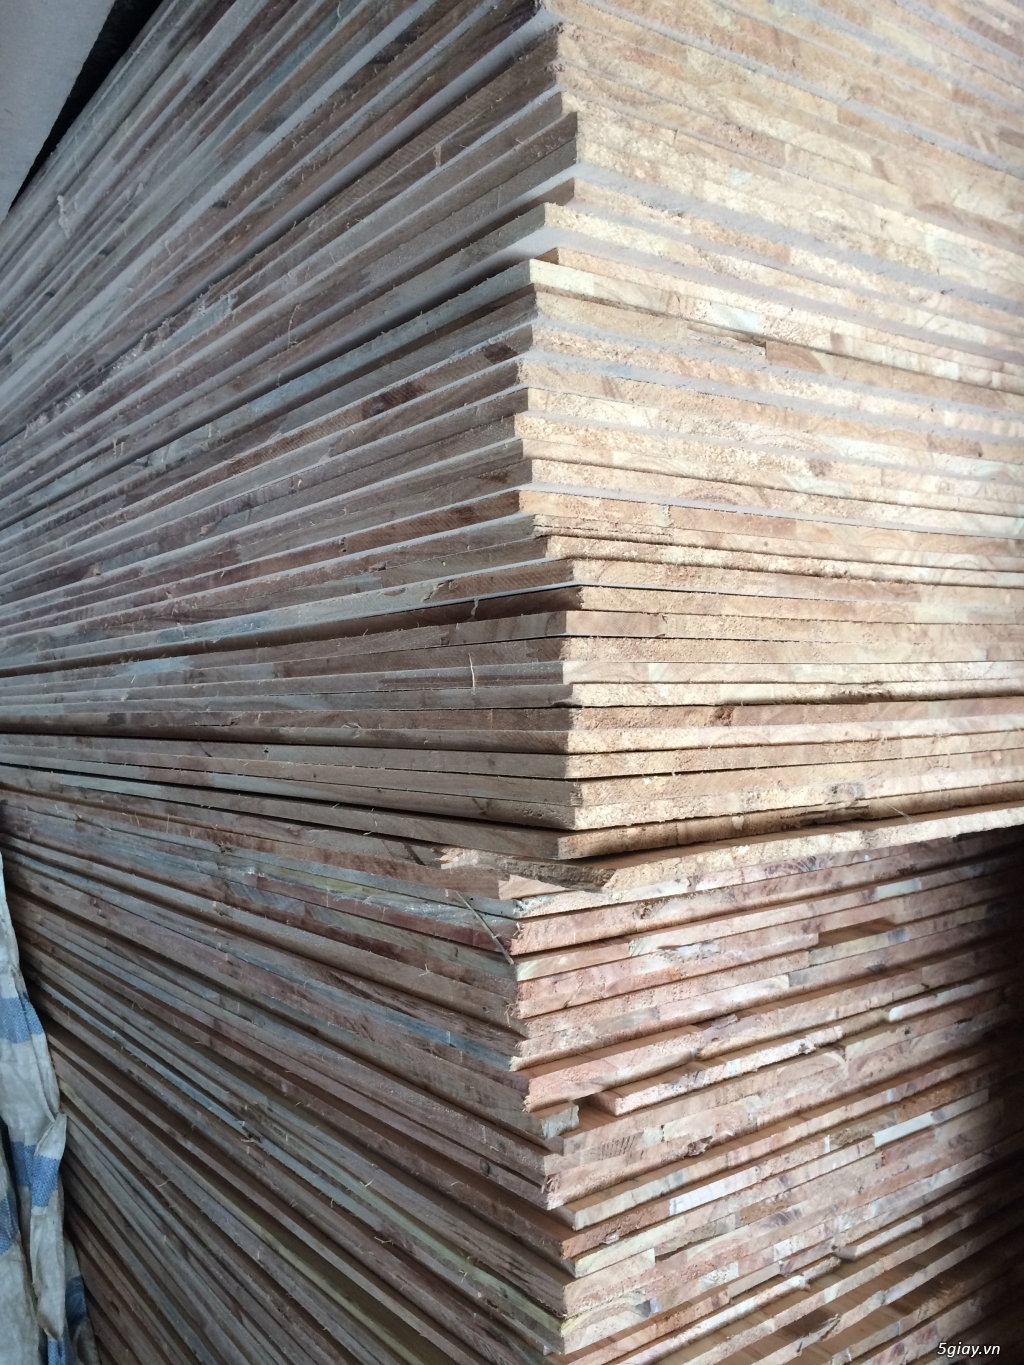 Xưởng gỗ An Hưng sản xuất ván gỗ ghép suốt xoan đào, thông, gỗ nhóm... - 2